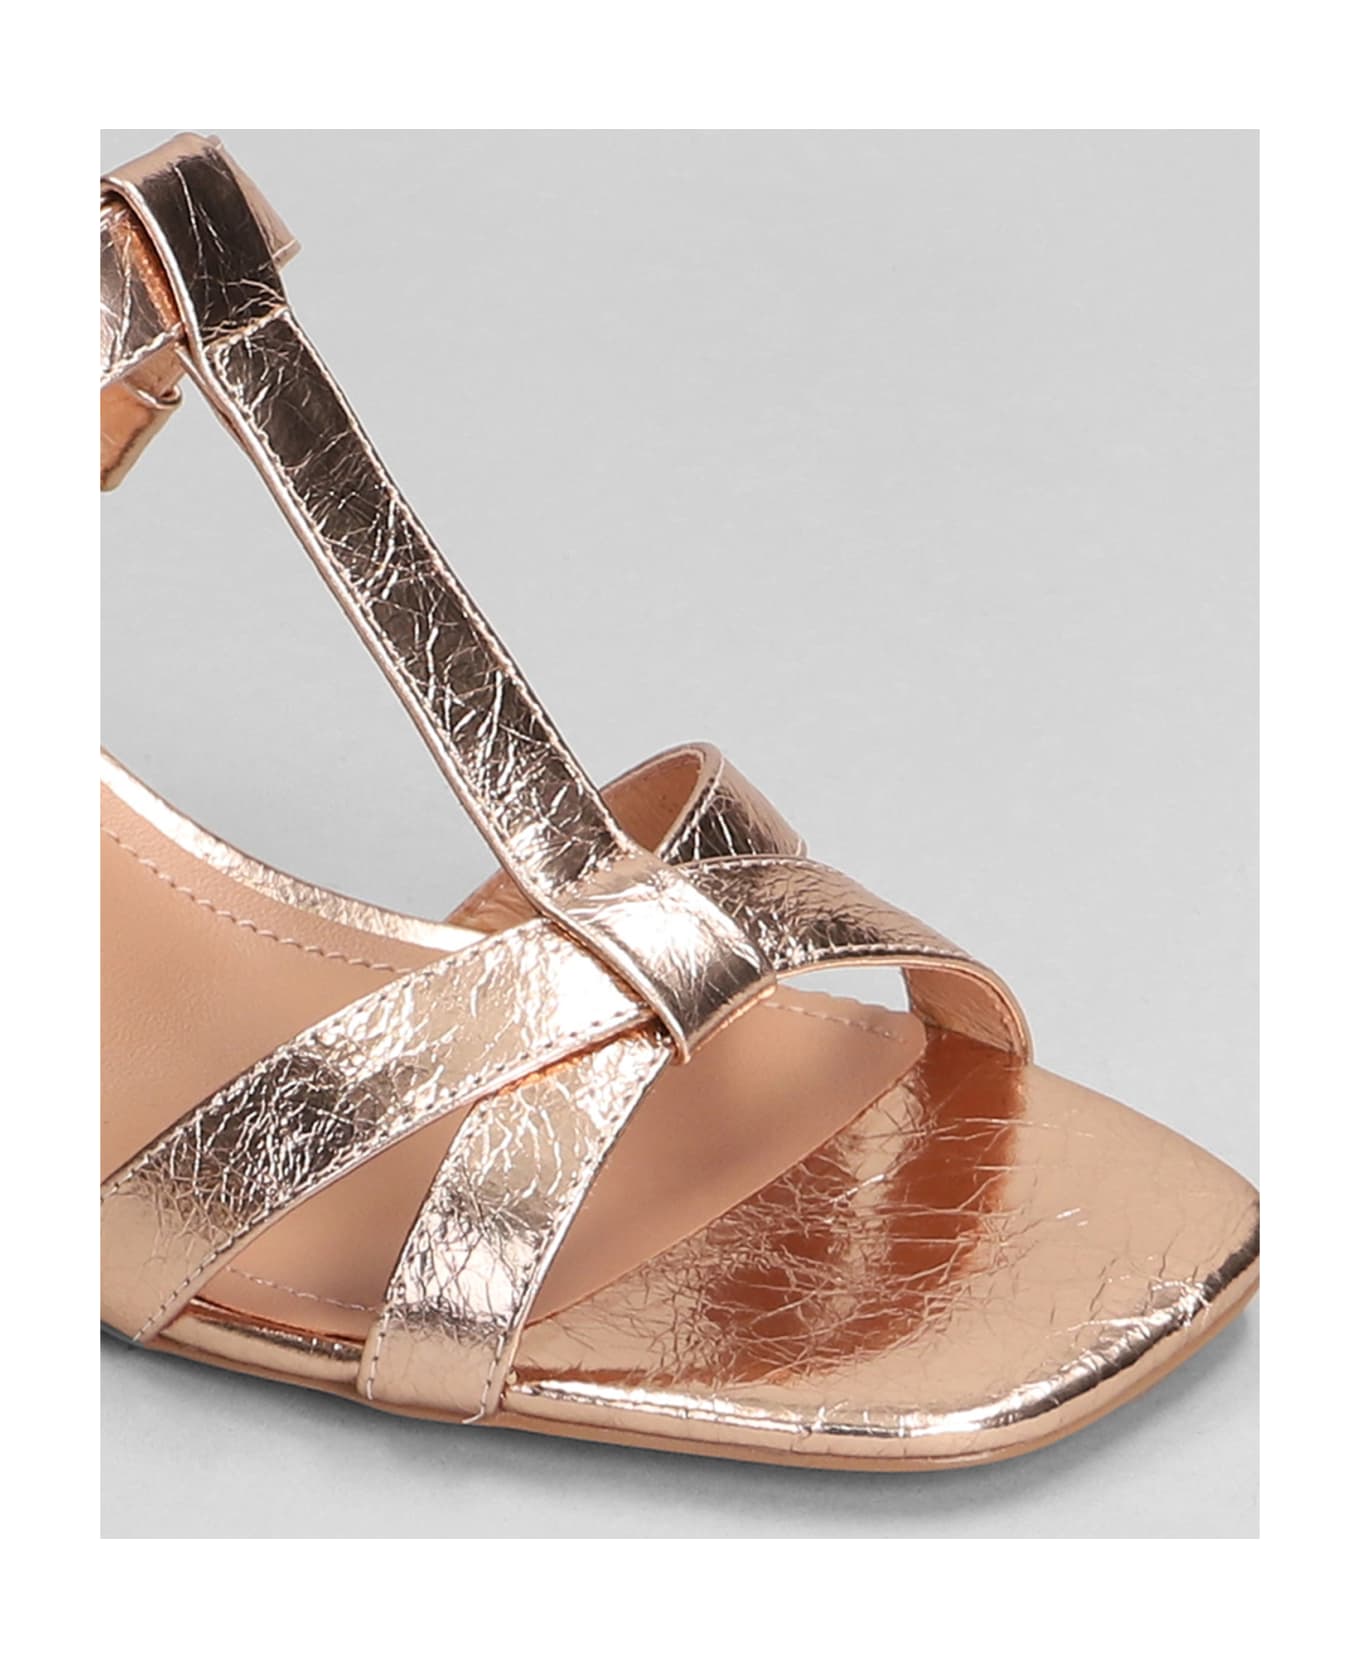 Bibi Lou Rosie Sandals In Copper Leather - copper